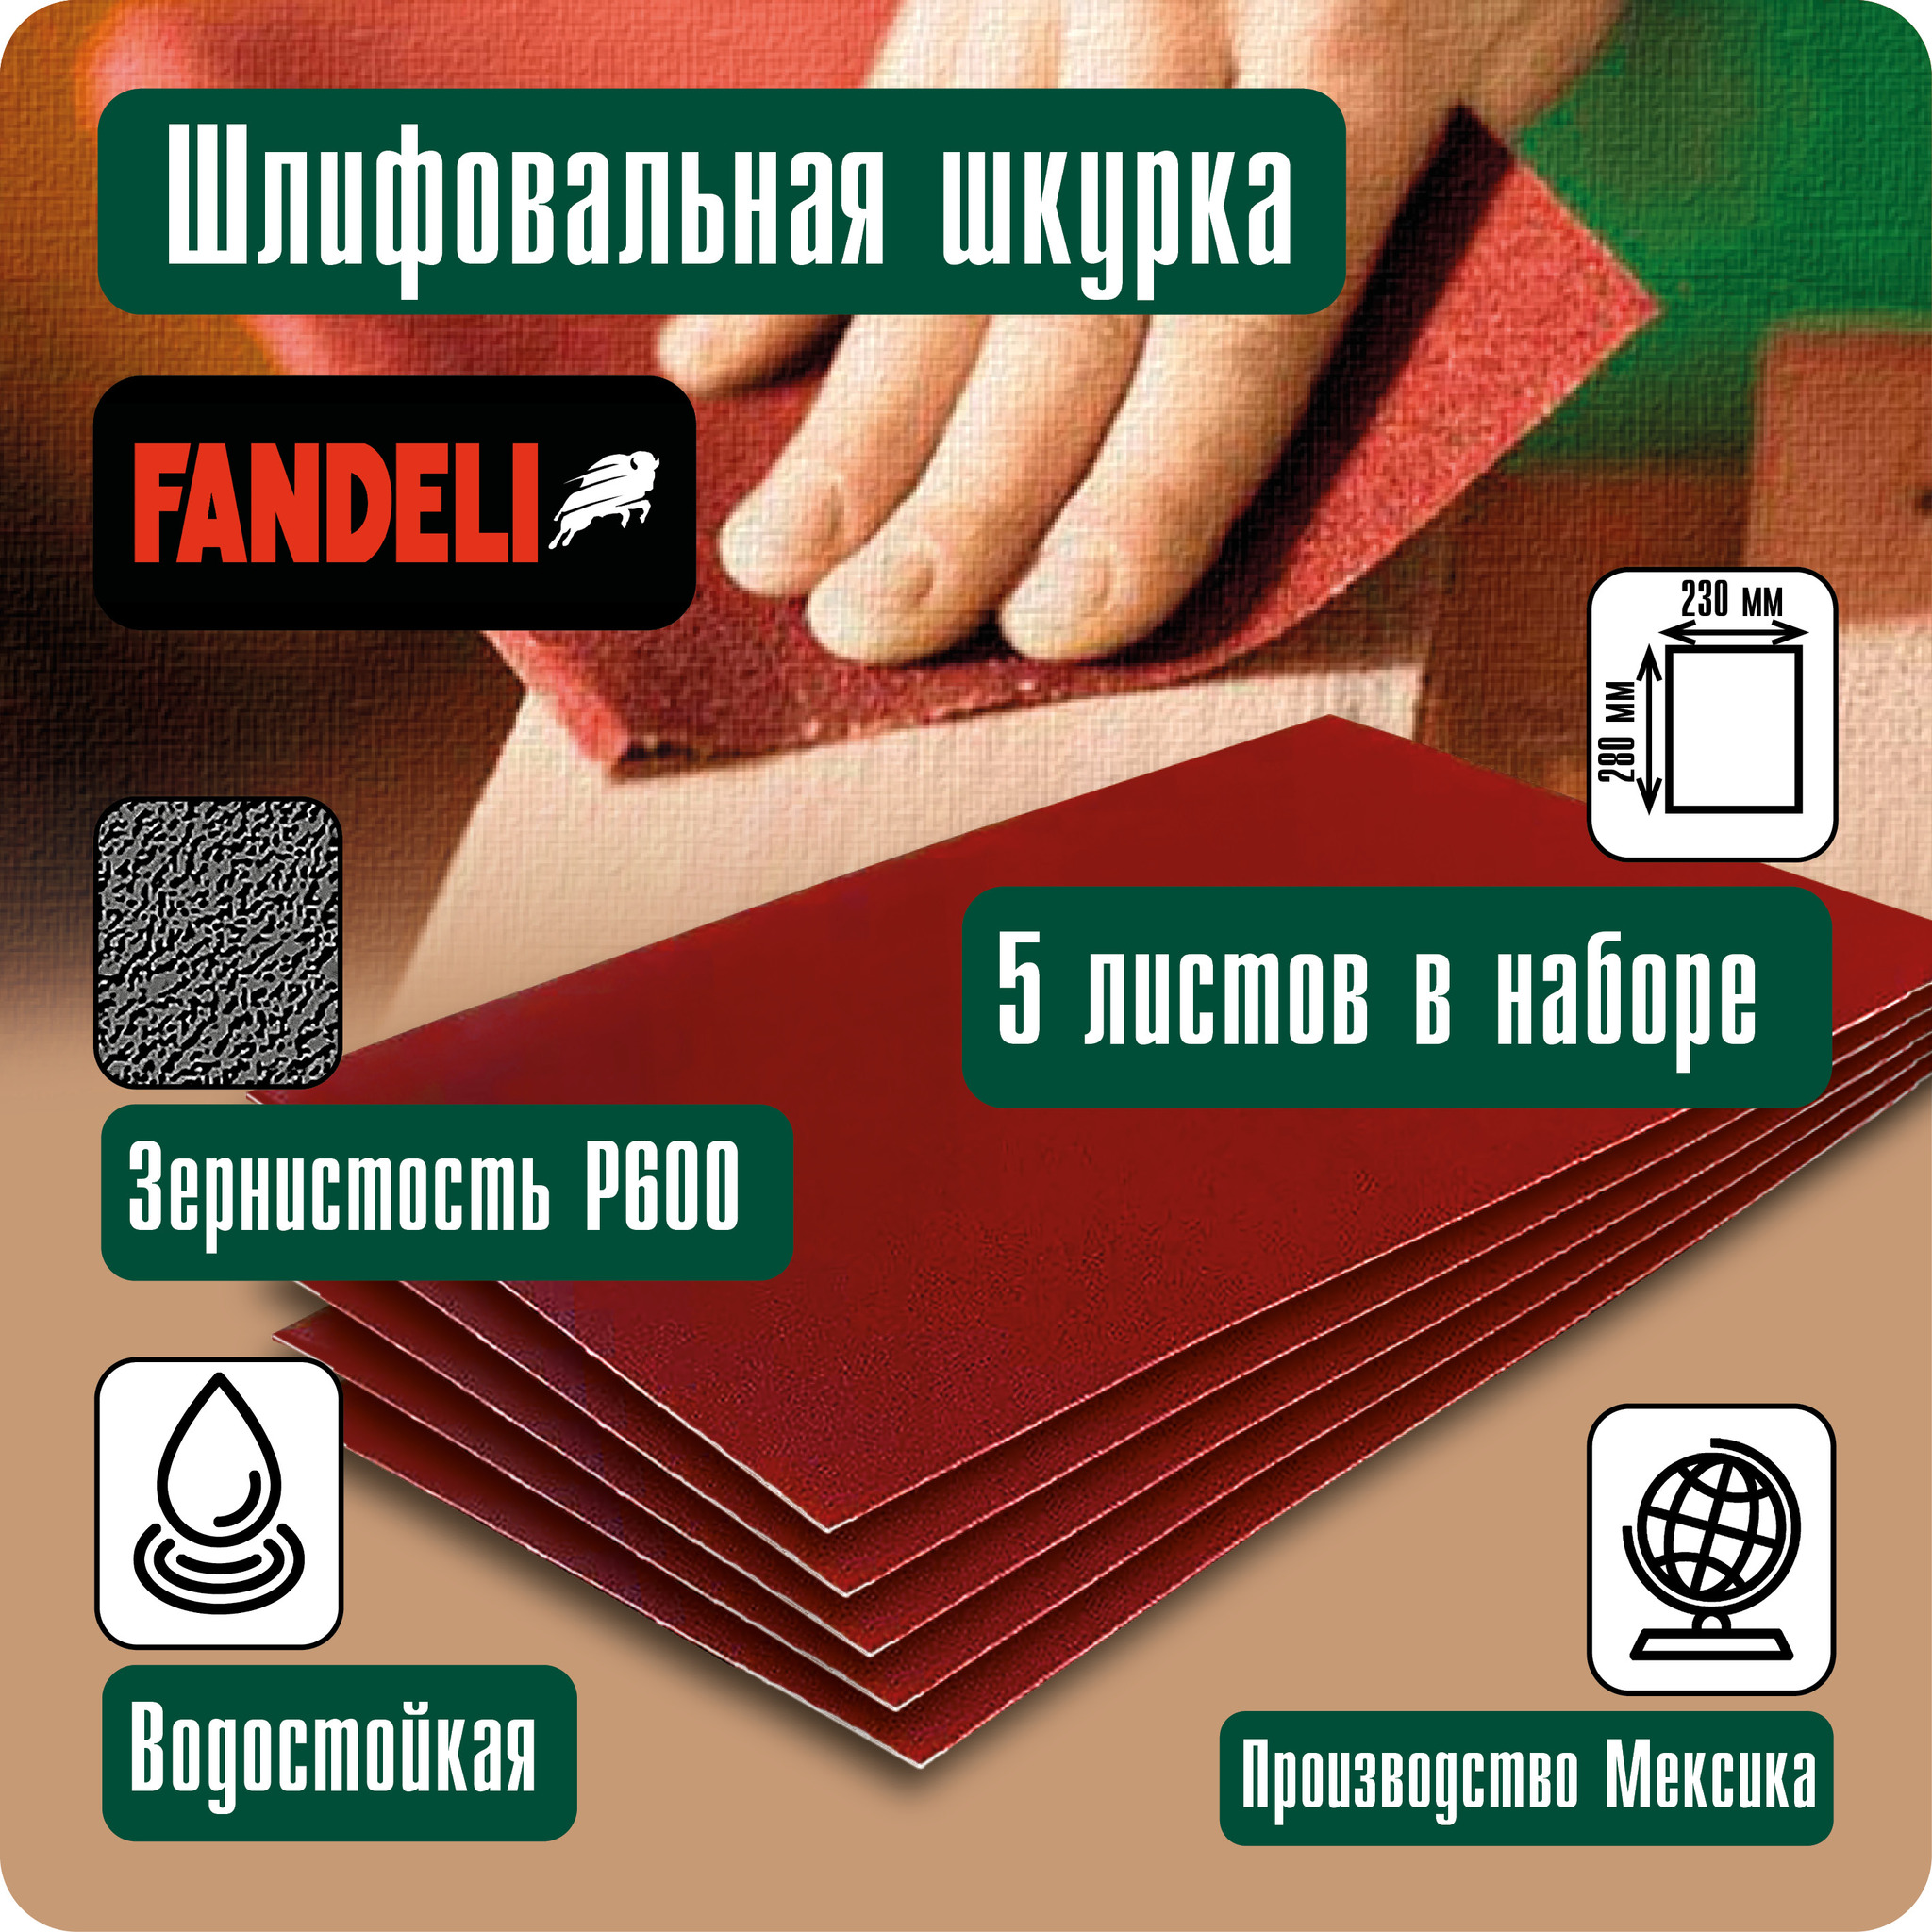 Наждачная бумага Fandeli шлифовальная шкурка 5шт P600 5ФШ600 наждачная бумага fandeli шлифовальная шкурка 5шт p800 5фш800